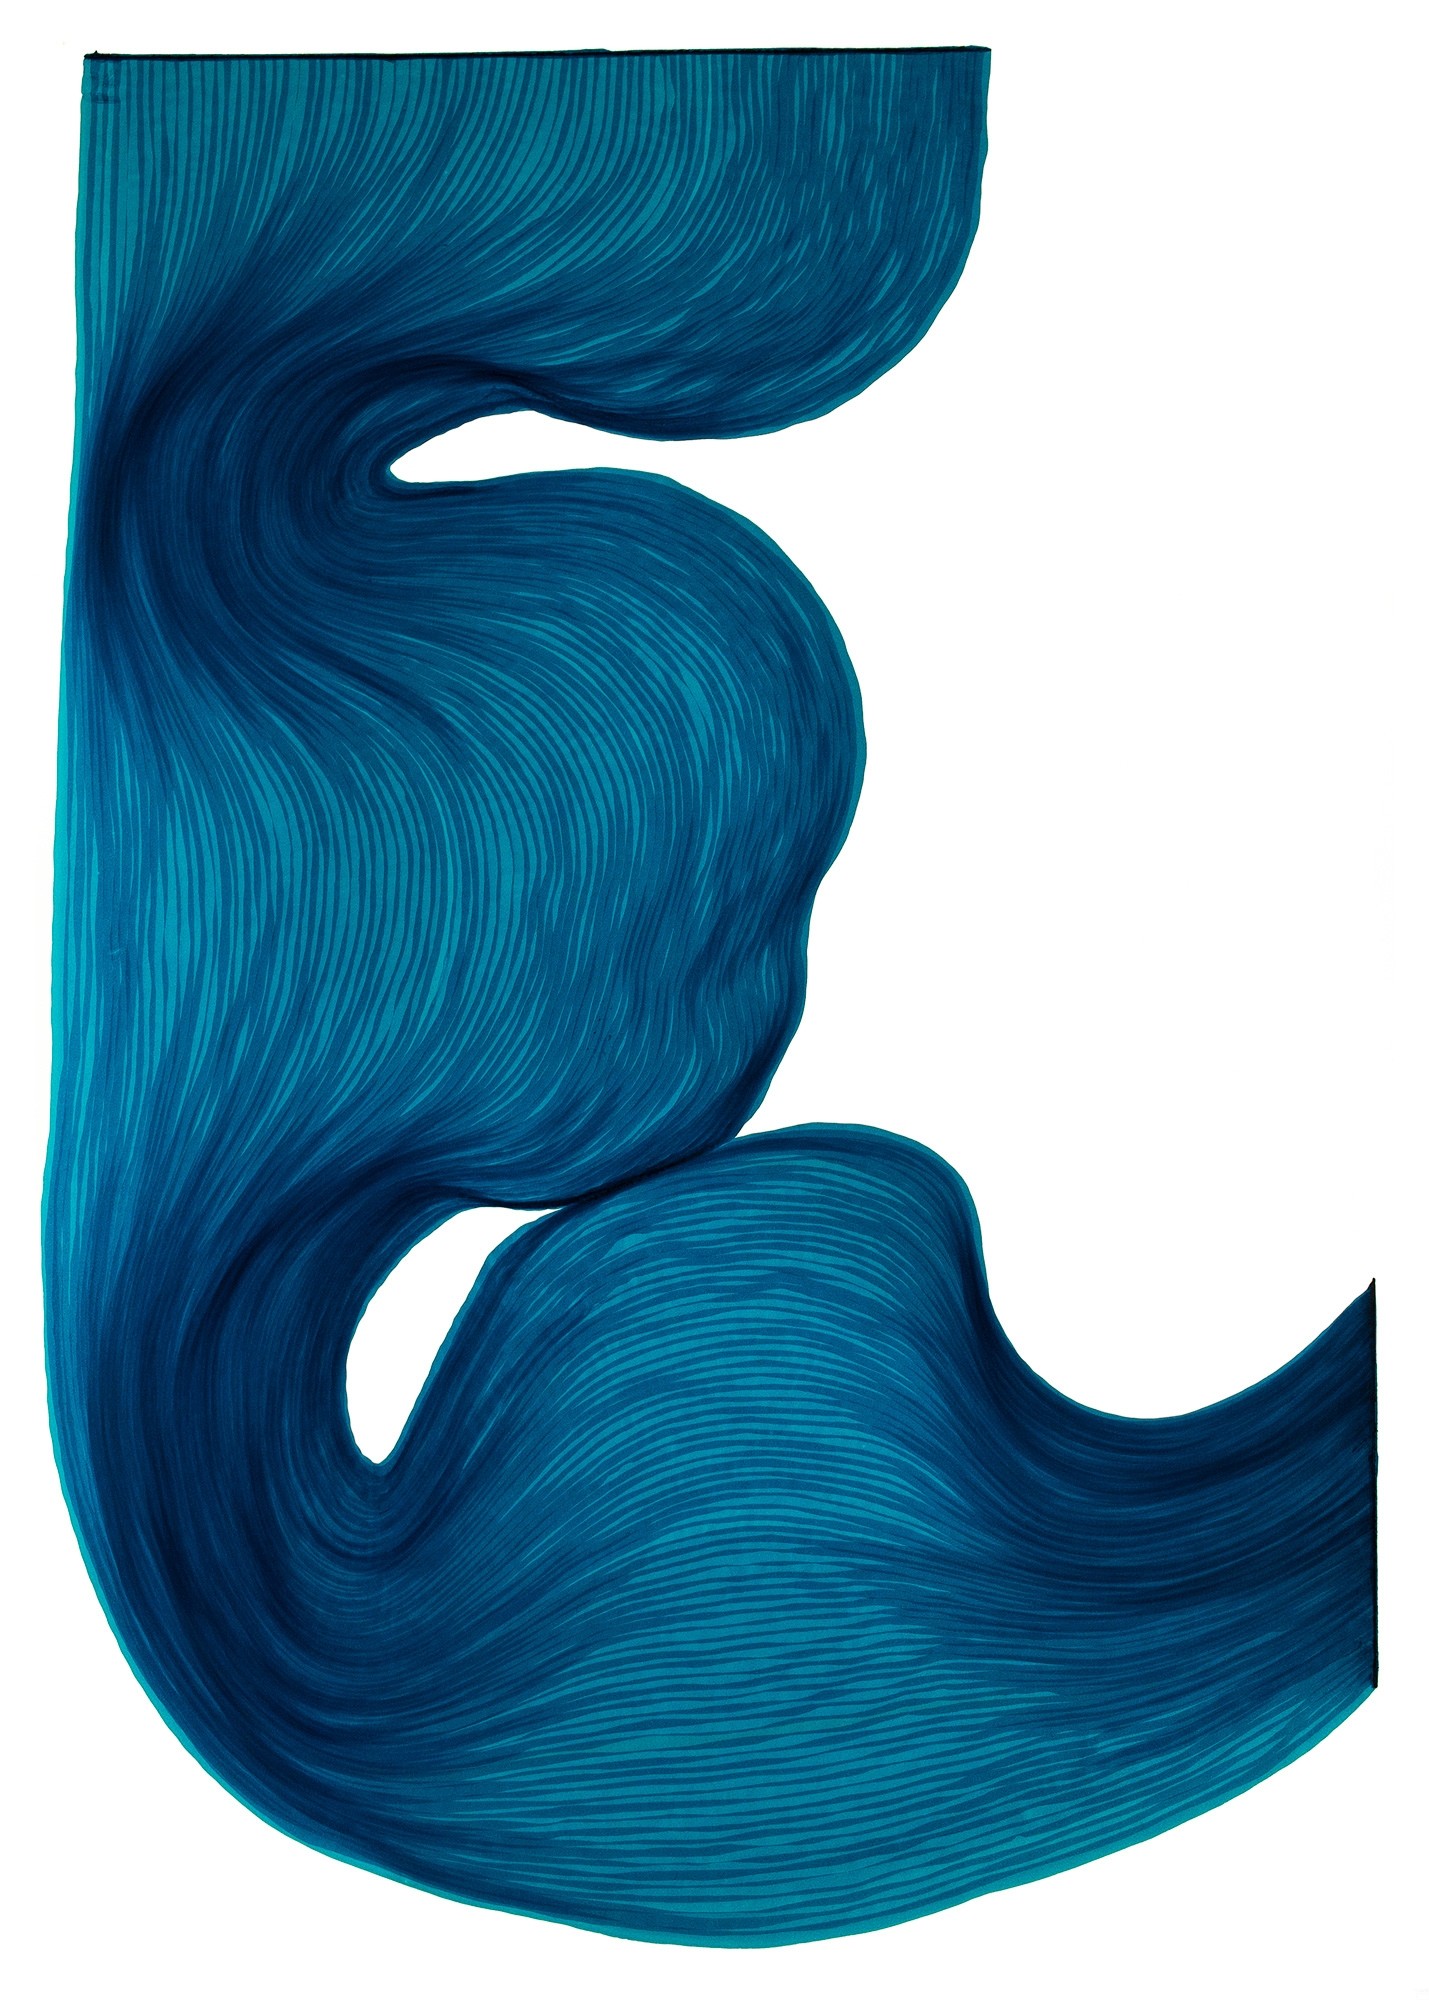 Rich Blue | Lali Torma | Zeichnung | Kalligraphietusche auf Papier